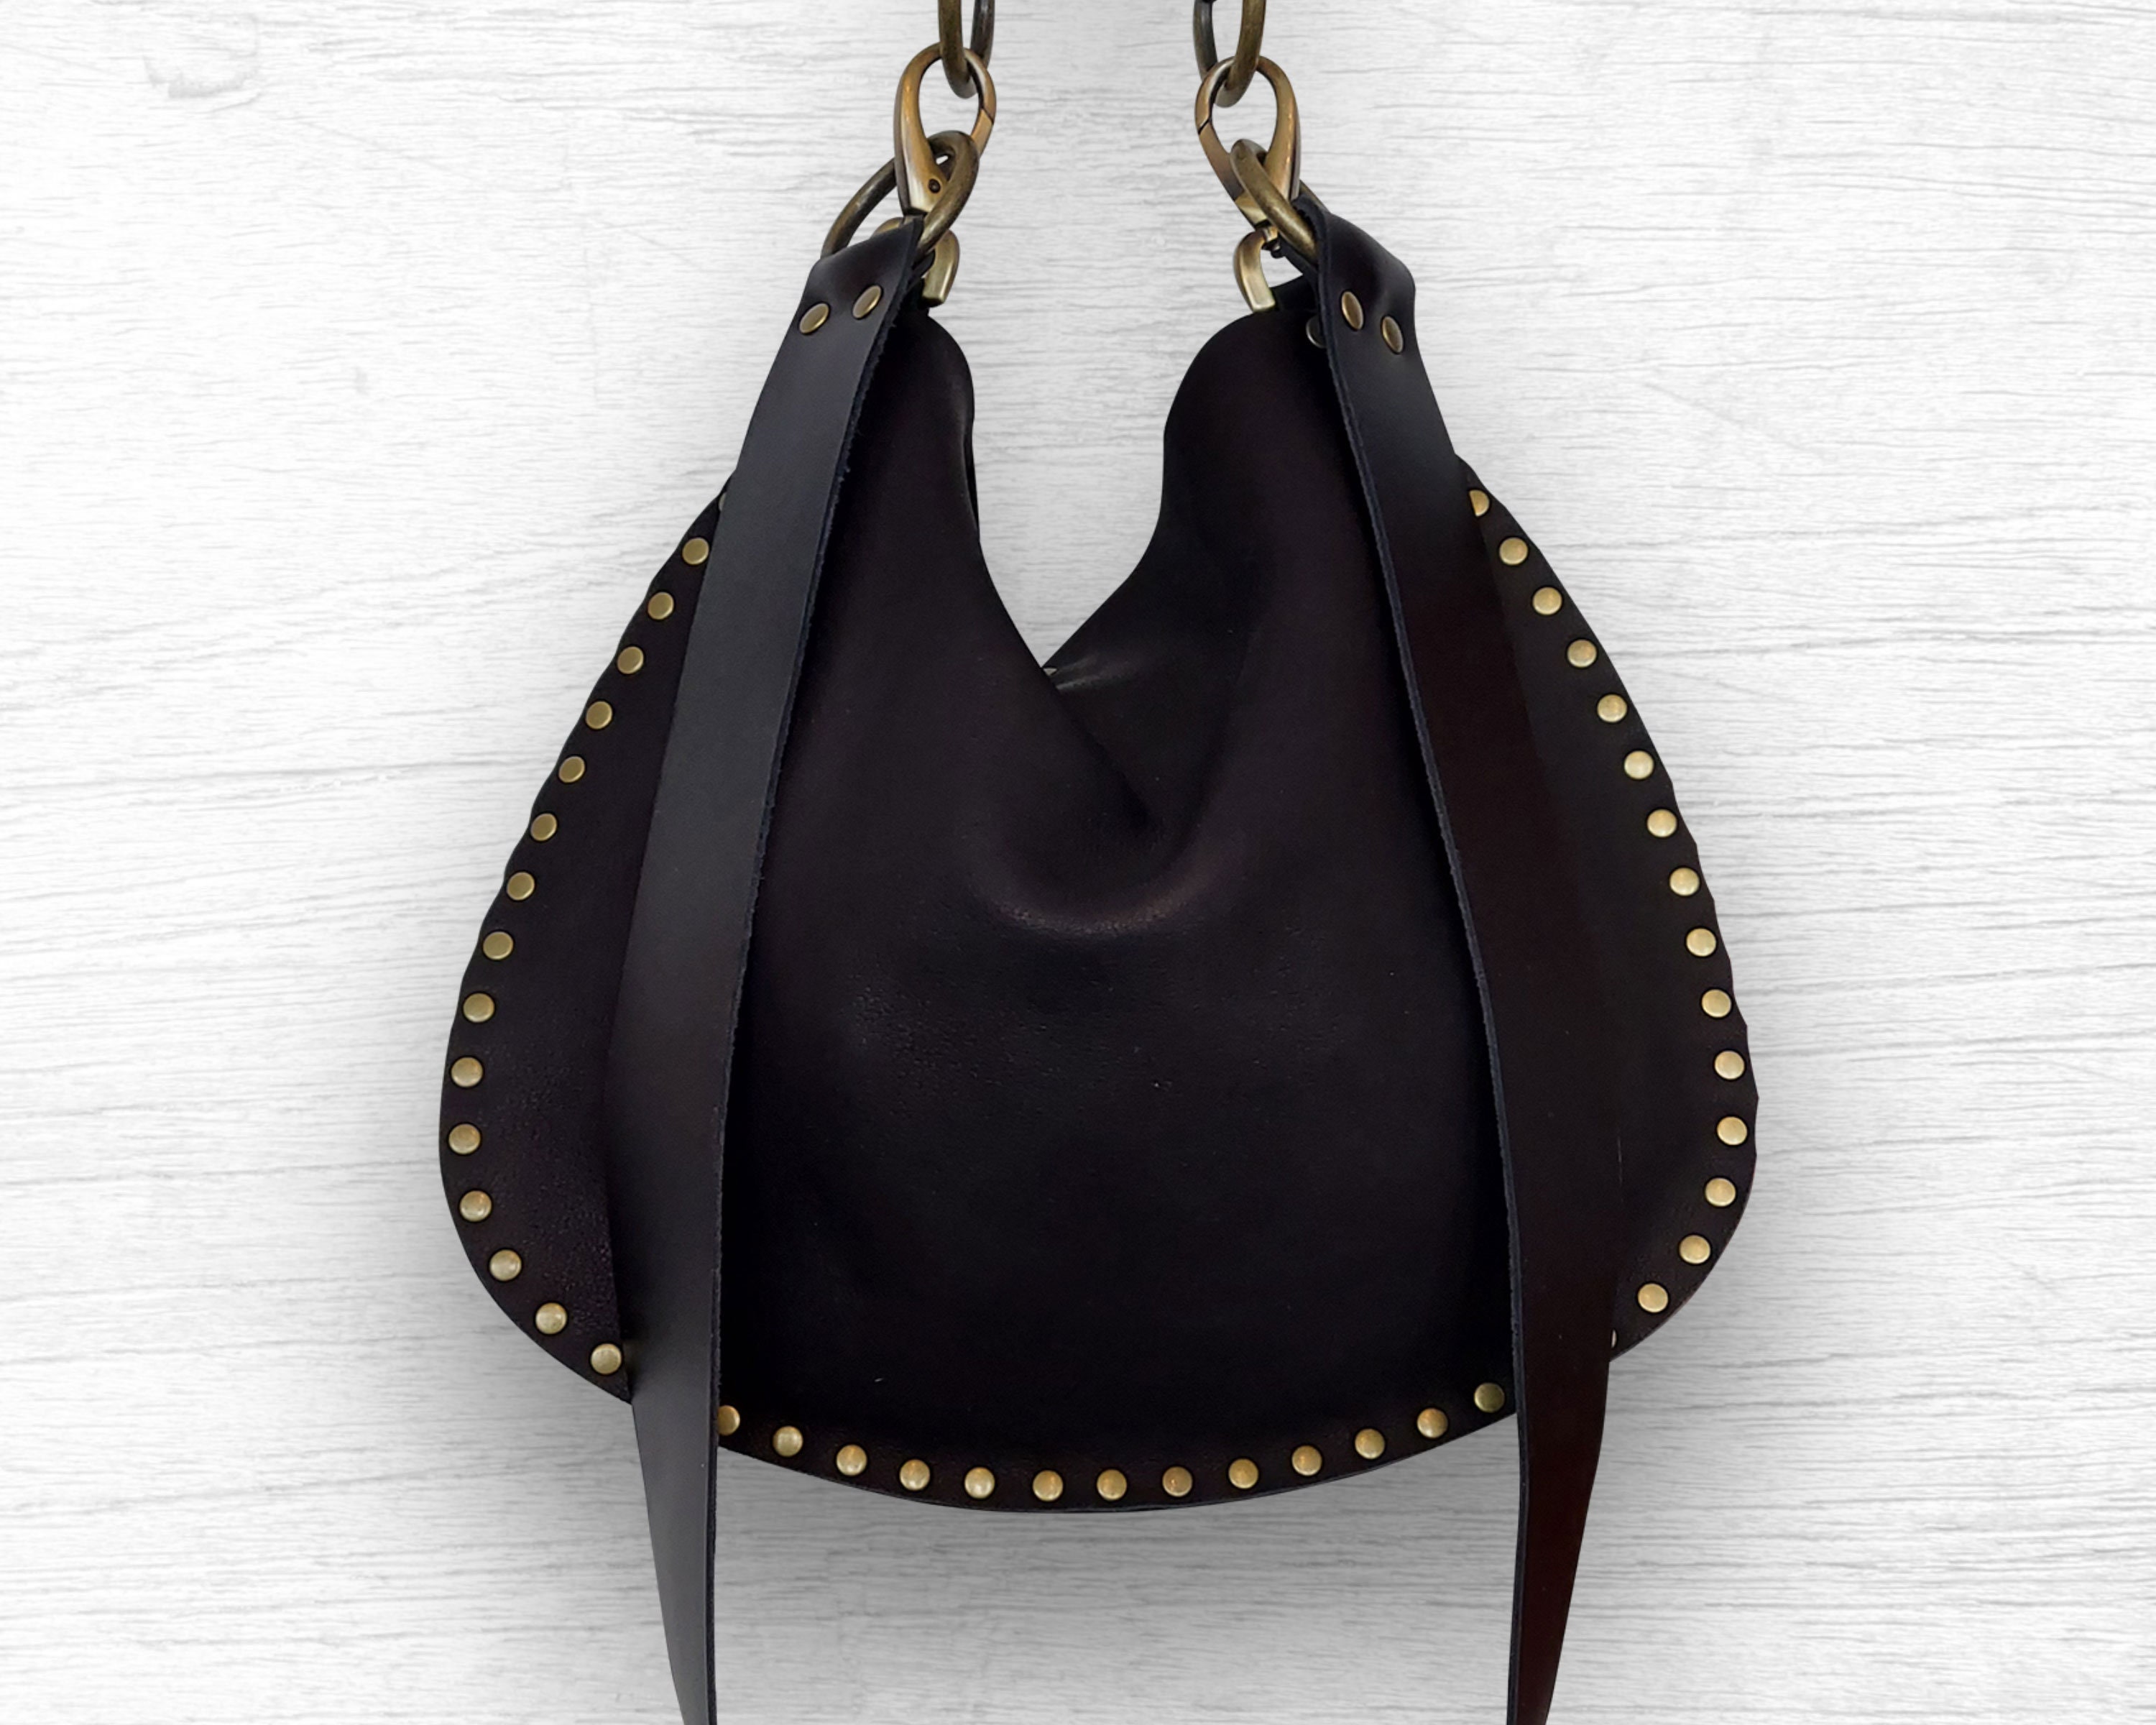 Kate Spade black leather foldover shoulder bag/crossbody – My